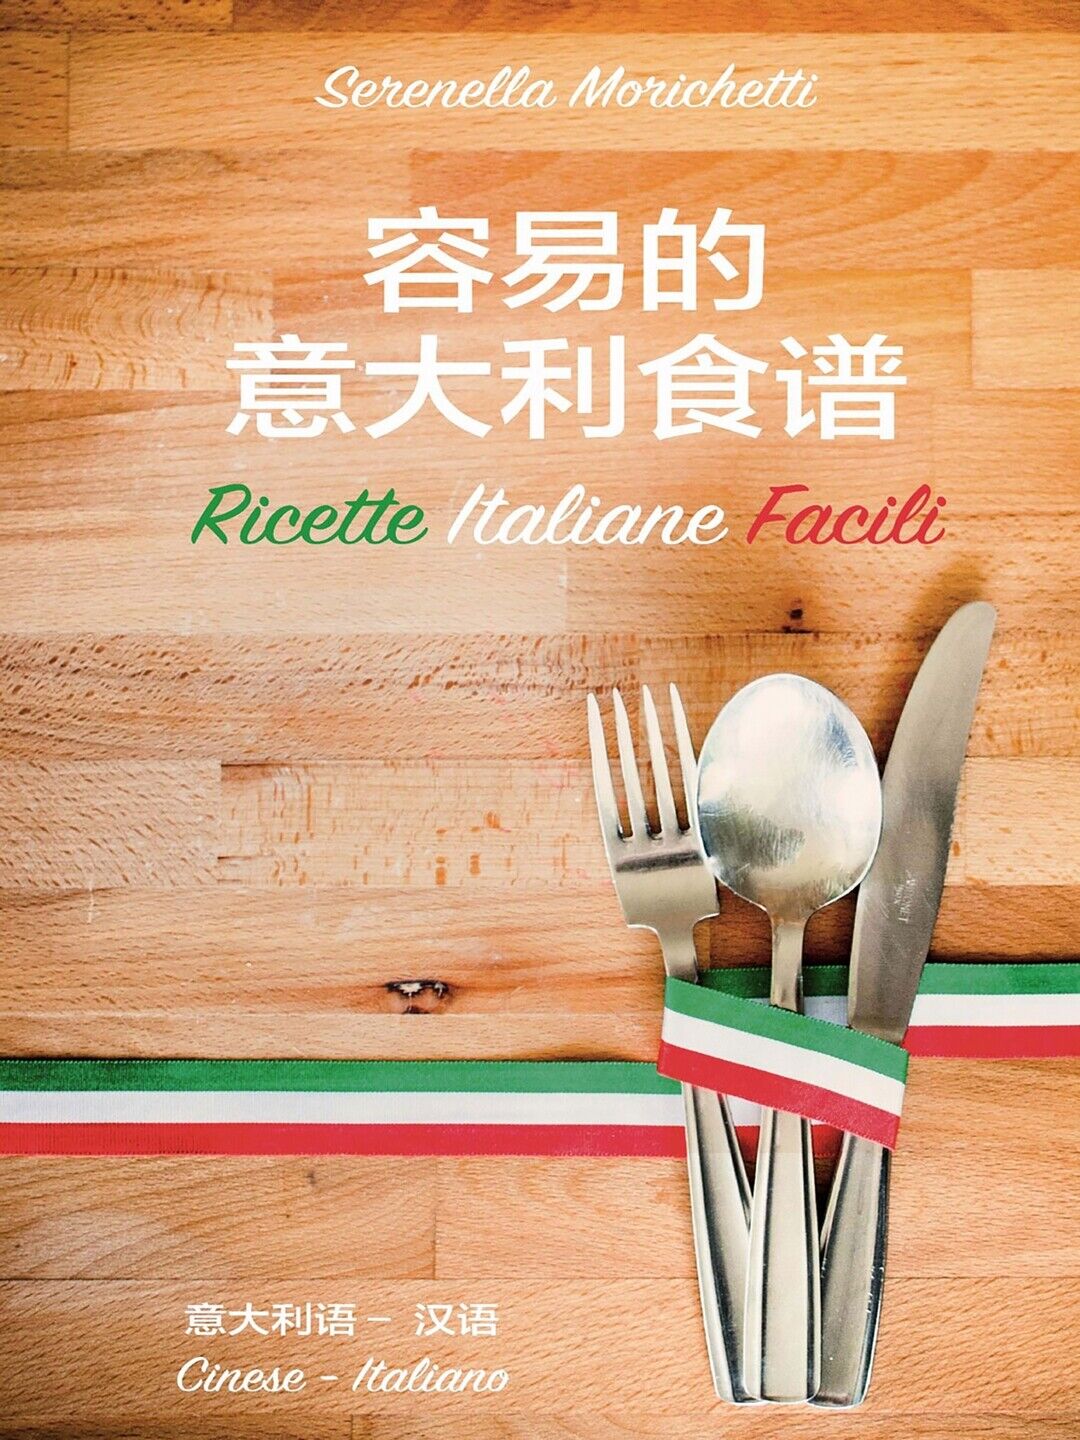 Ricette Italiane Facili  di Serenella Morichetti,  2020,  Youcanprint